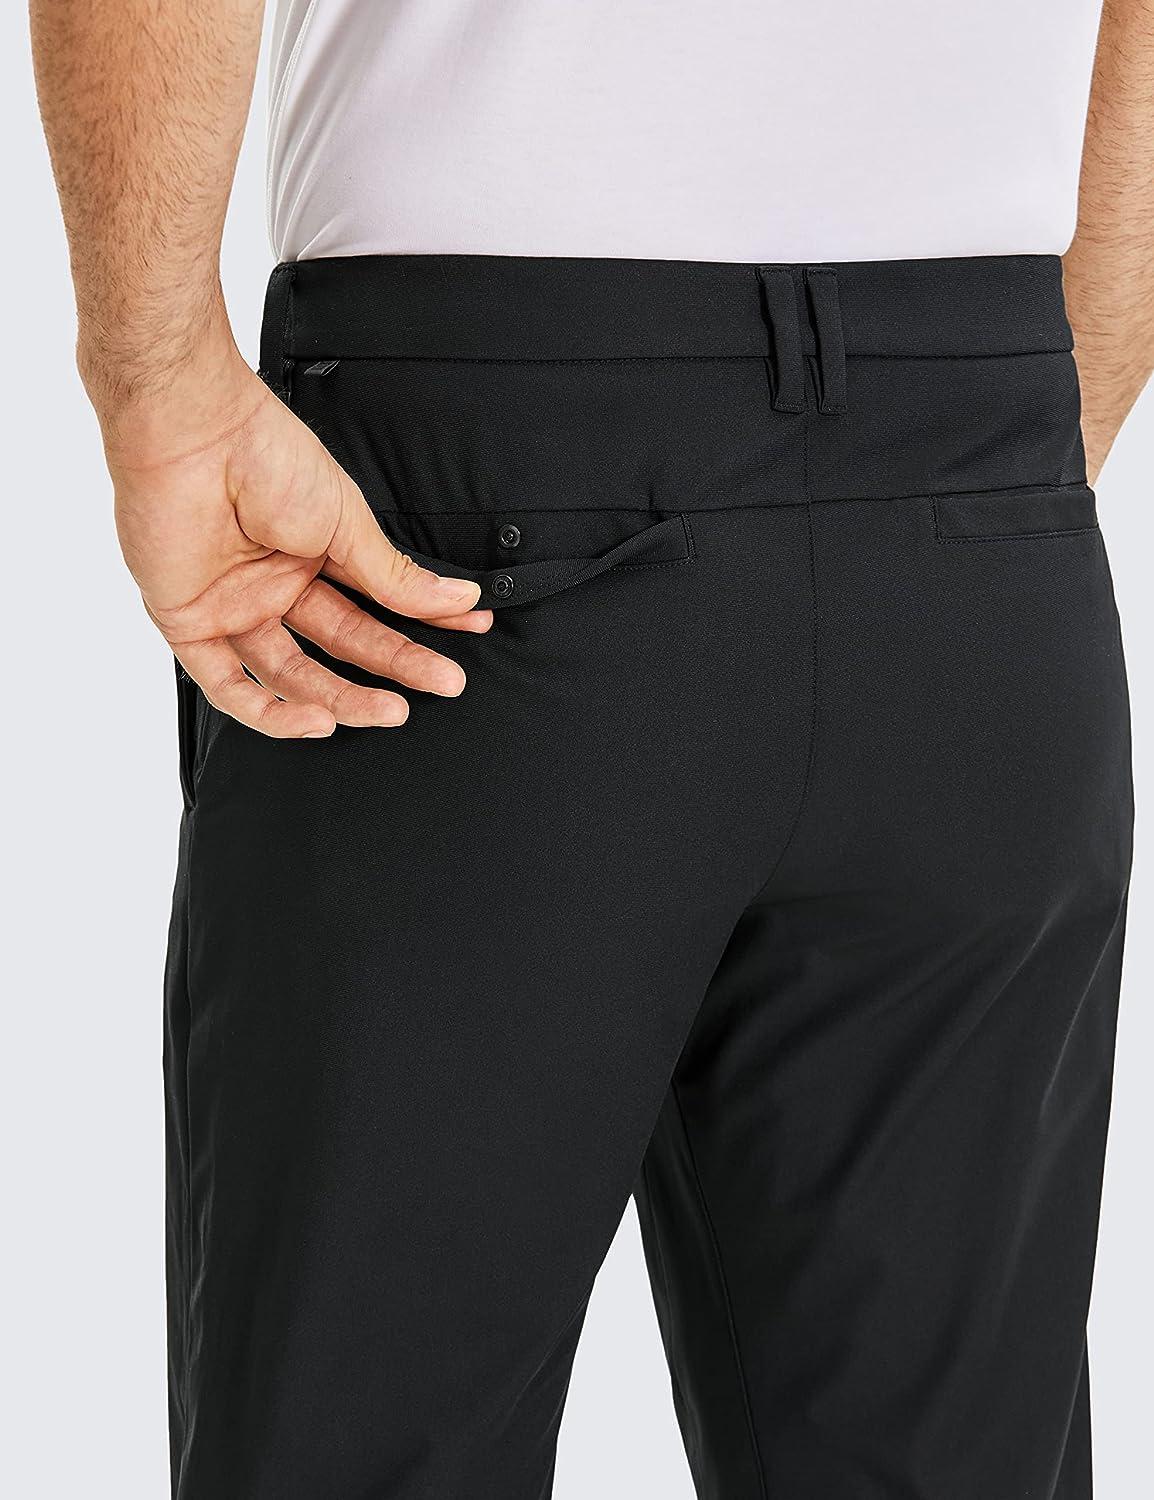 Golf Pants with Hidden Zipper Pocket - 32